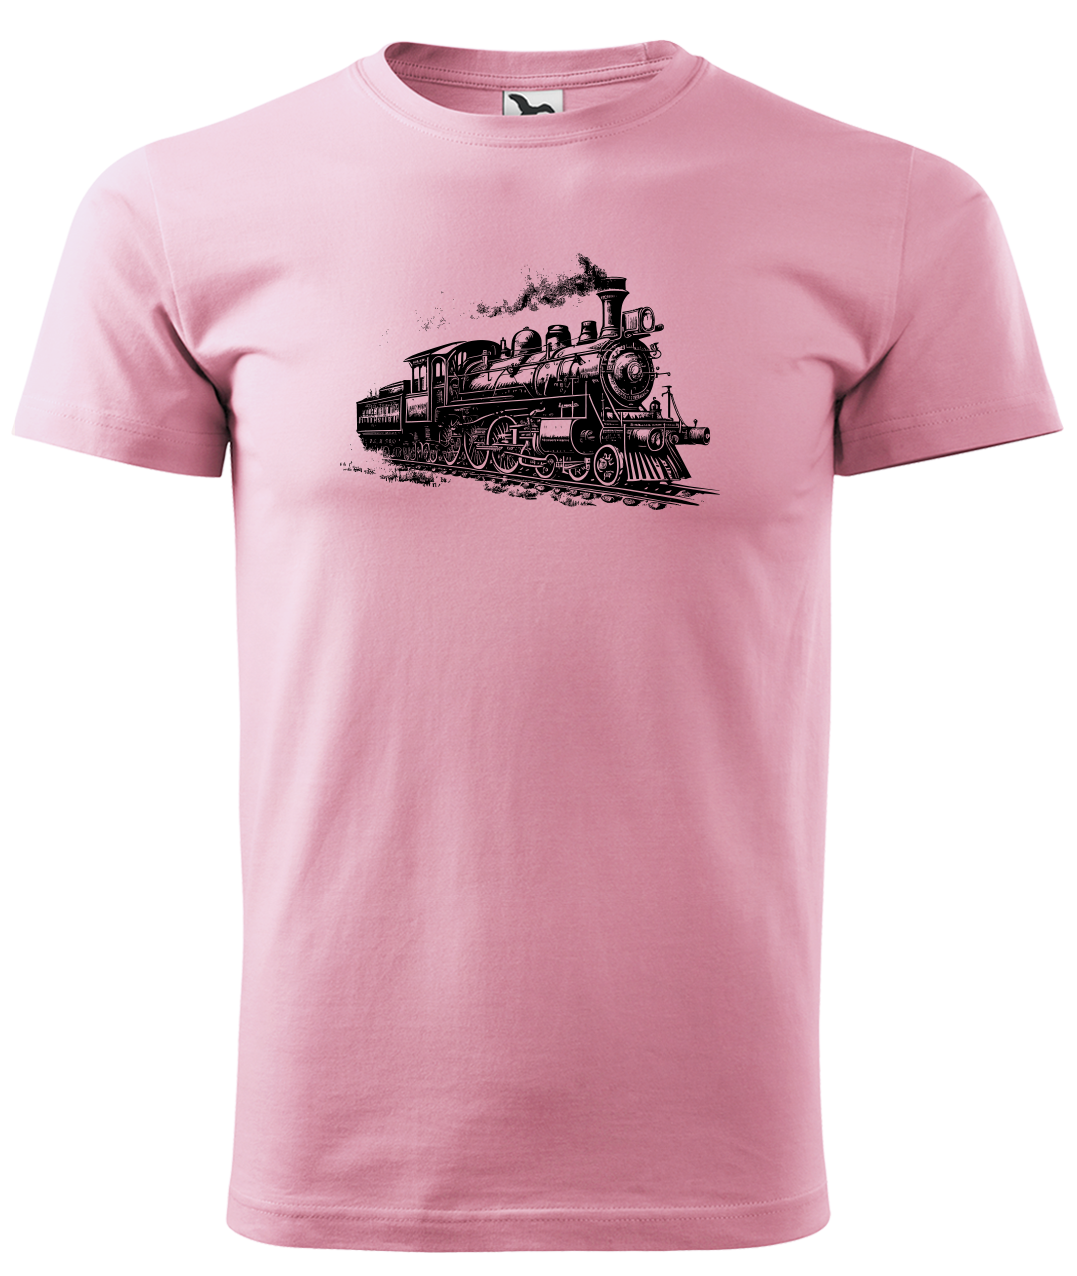 Dětské tričko s vlakem - Stará lokomotiva Velikost: 4 roky / 110 cm, Barva: Růžová (30)